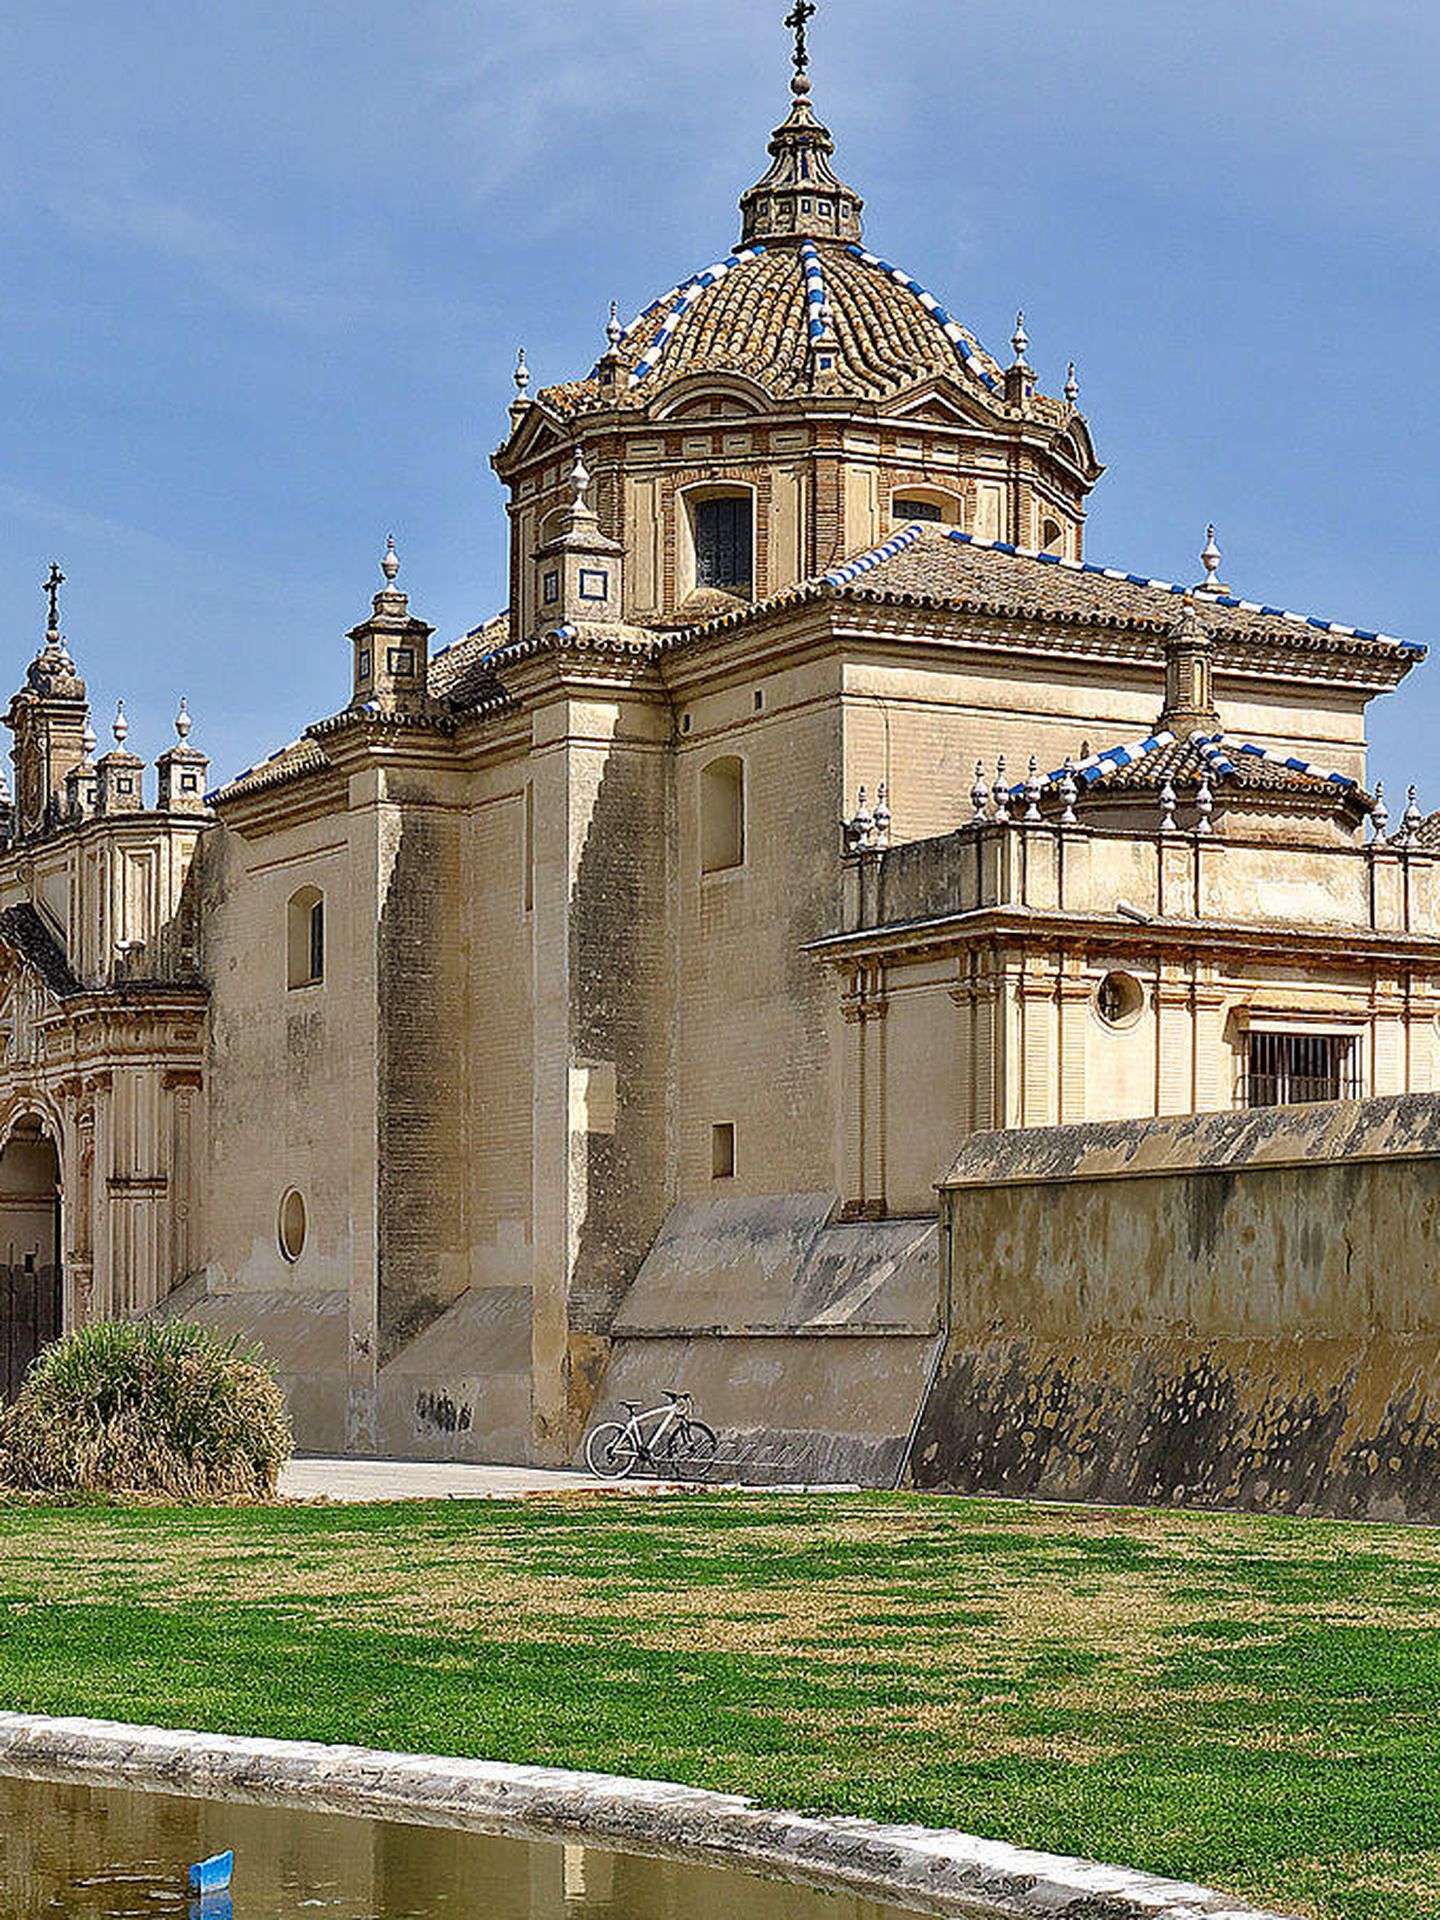 El Monasterio de Santa María de las Cuevas de Sevilla, más conocido como 'la Cartuja'. (CC/José Luis Filpo Cabana)